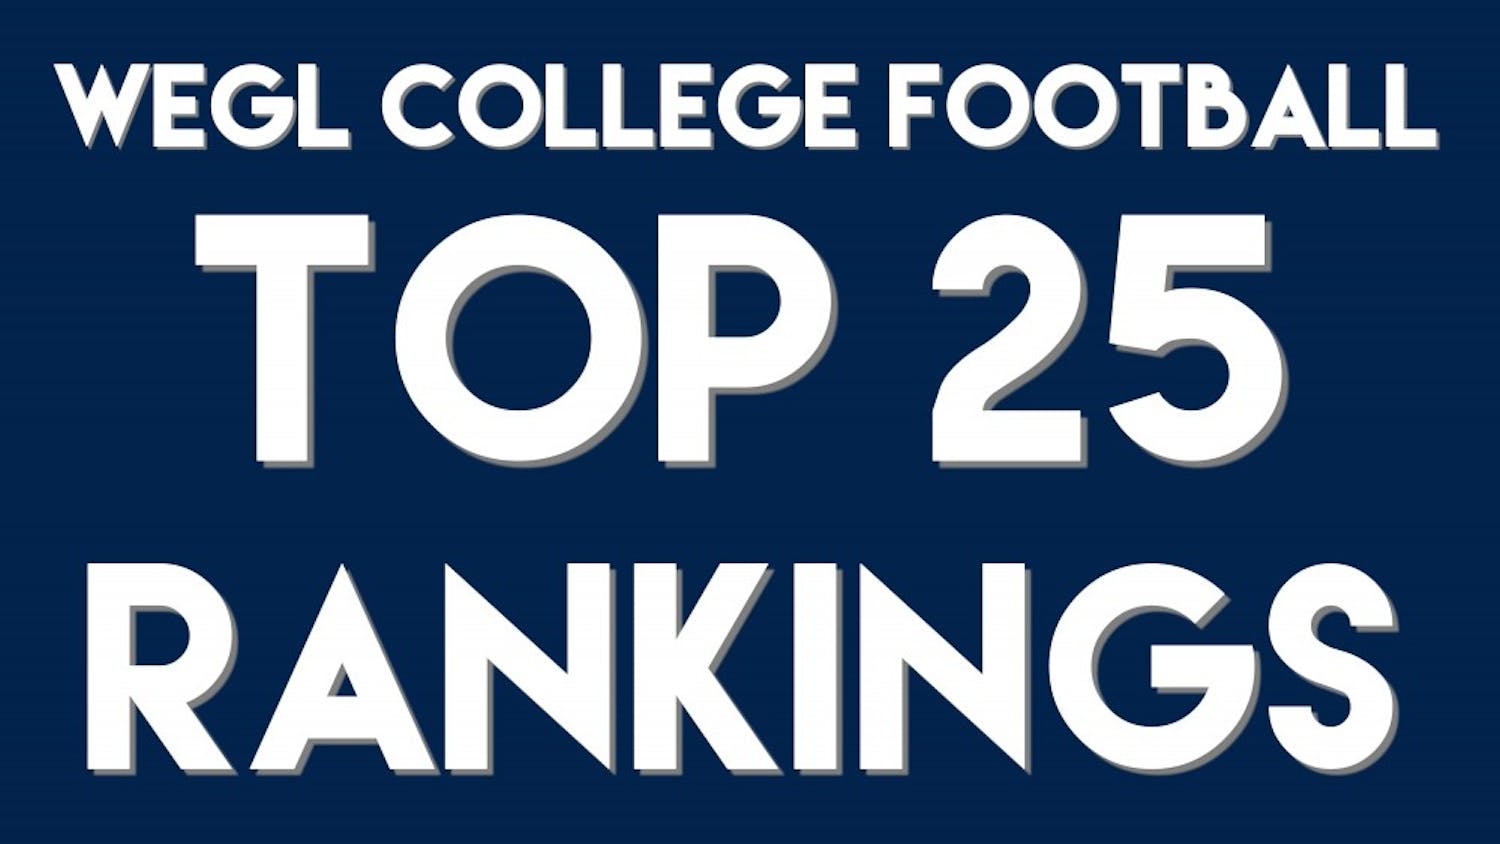 WEGL College Football Top 25 Rankings.jpg